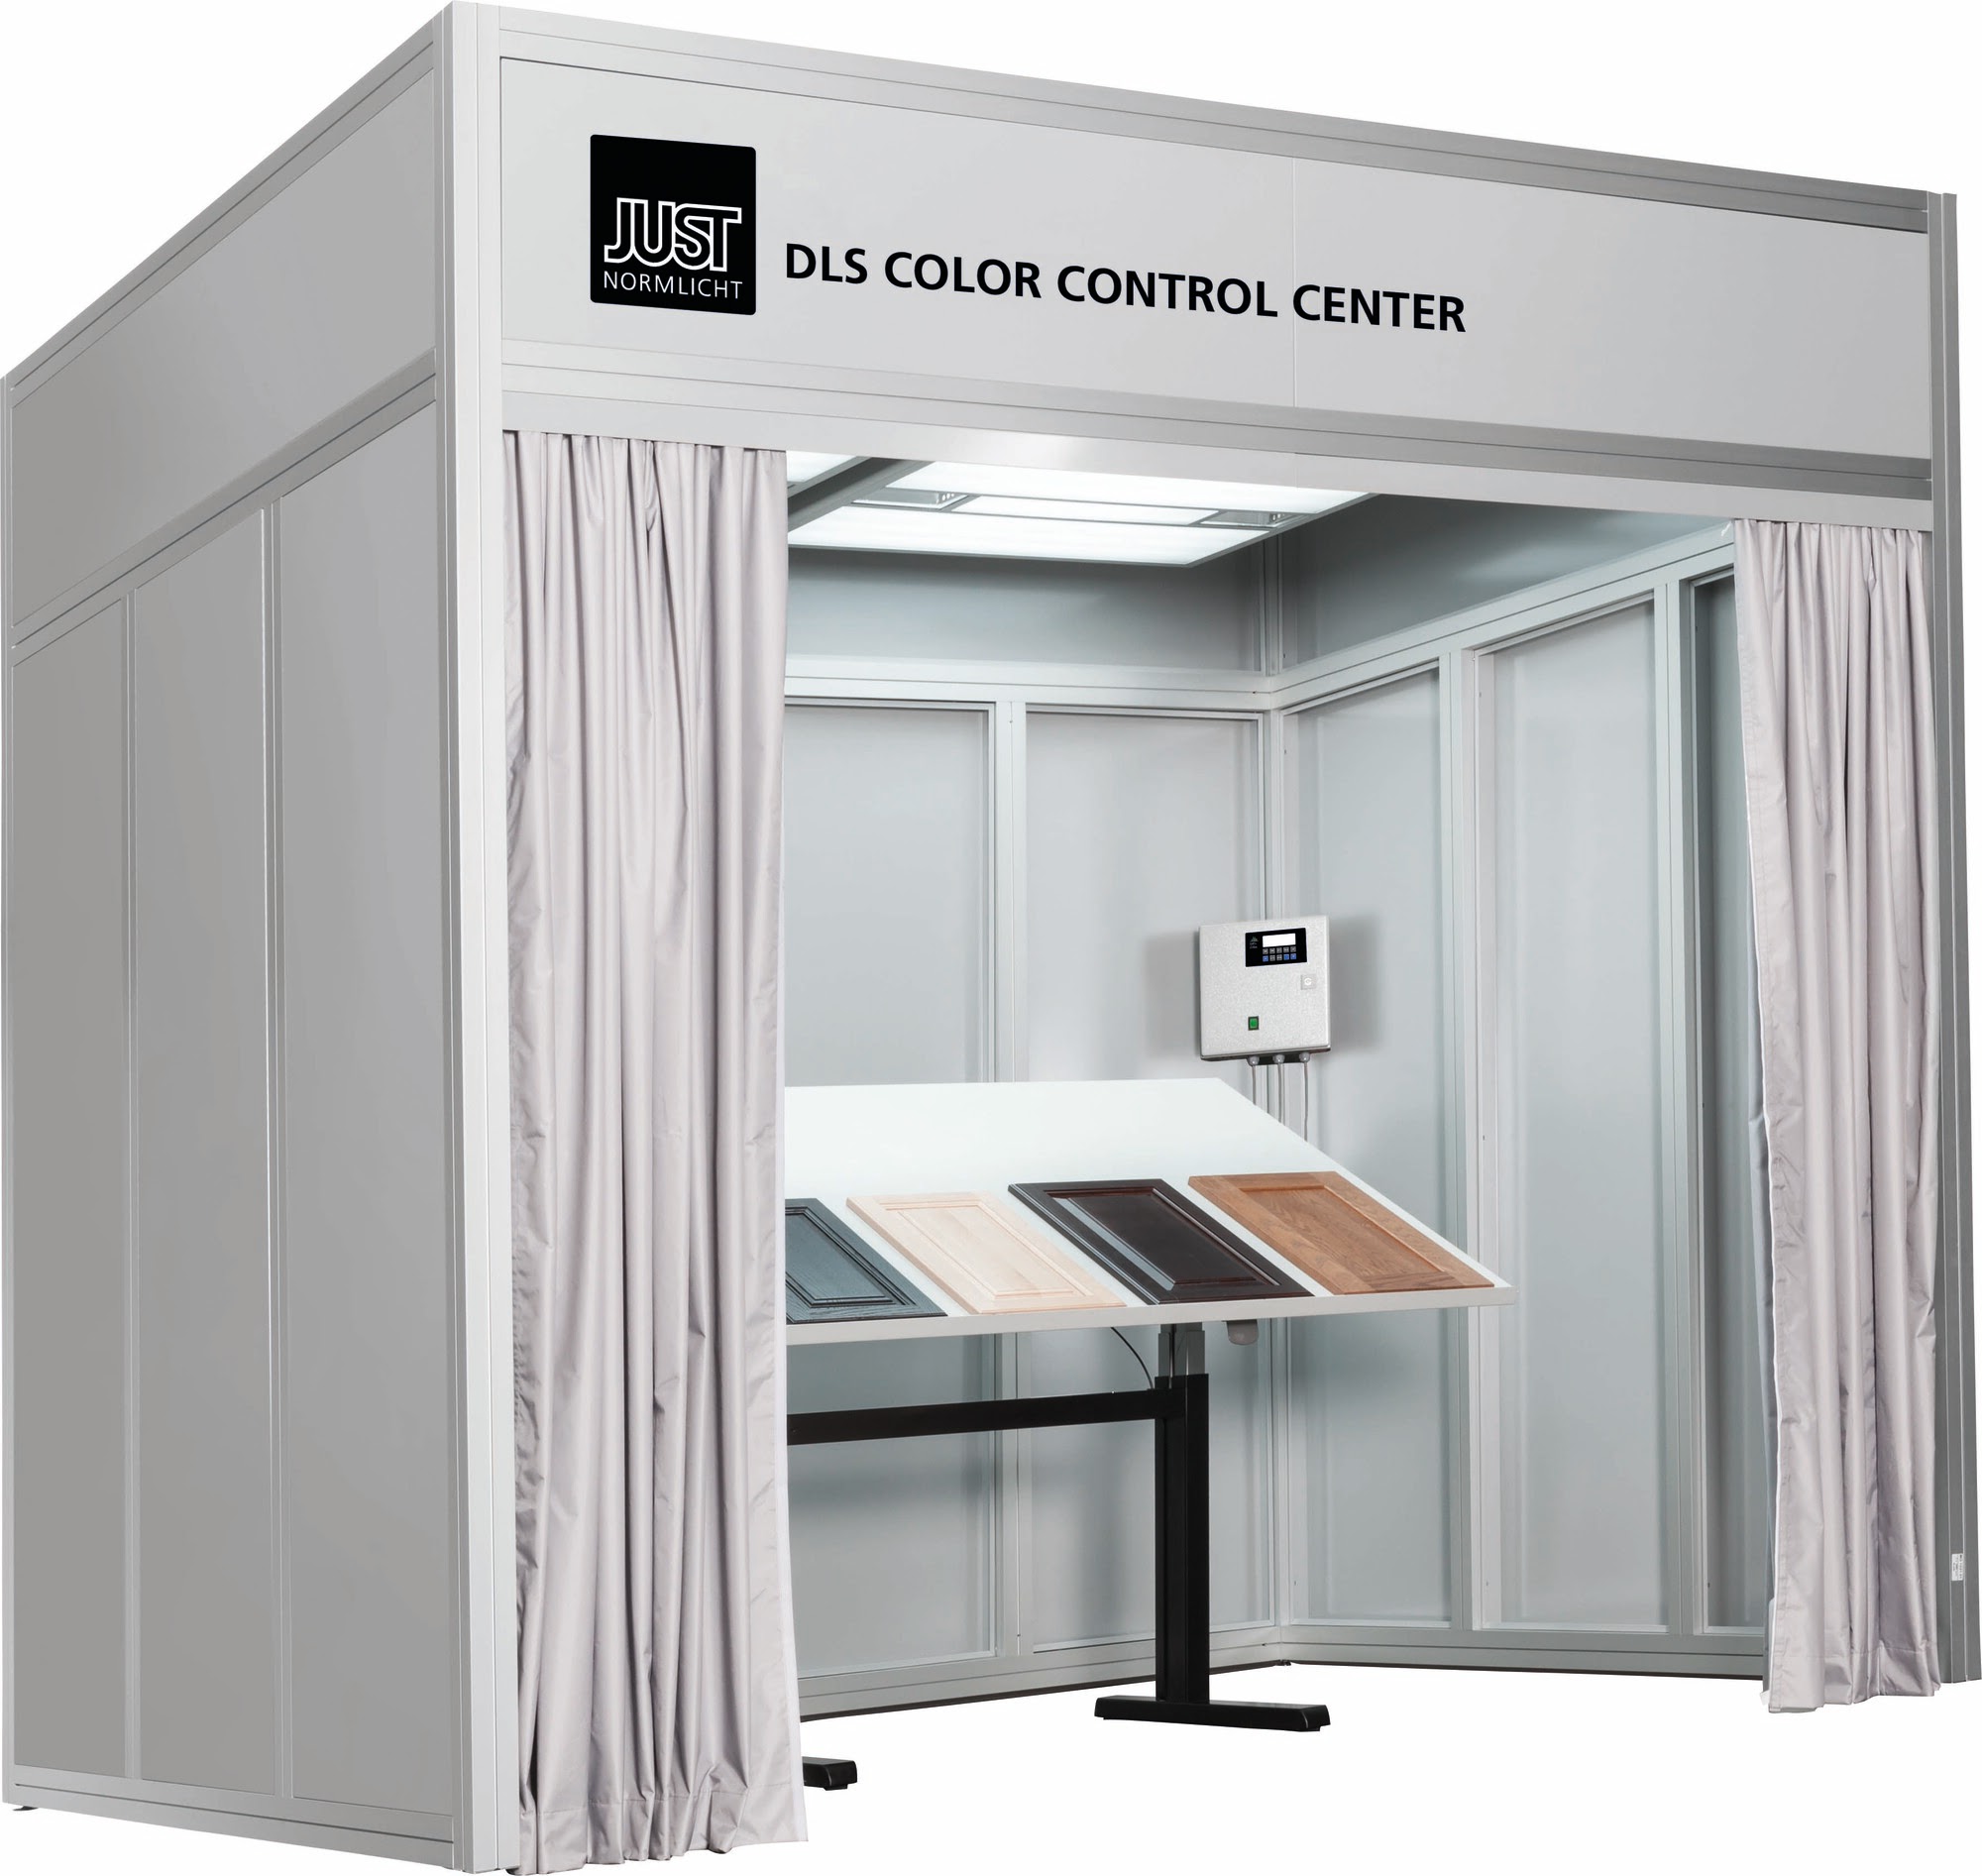 DLS Color Control Center